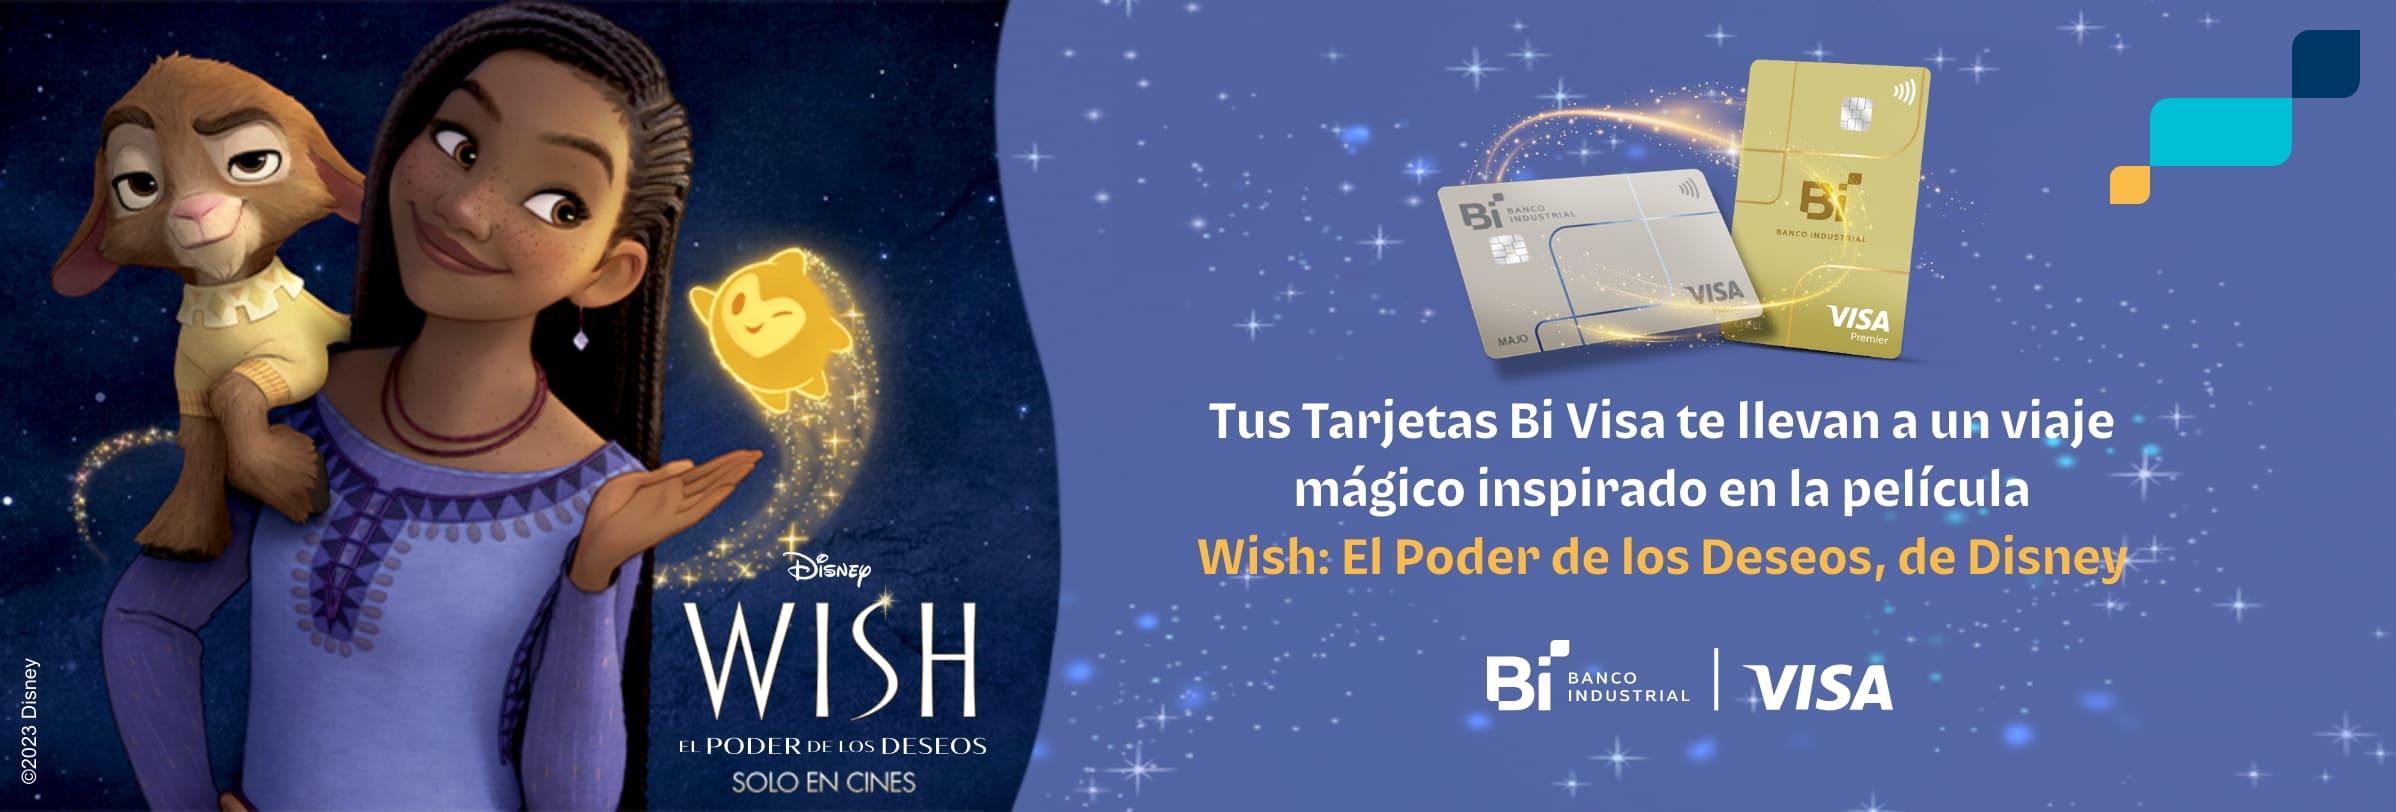 Wish, El poder de los Deseos, de Disney y tarjetas Bi visa